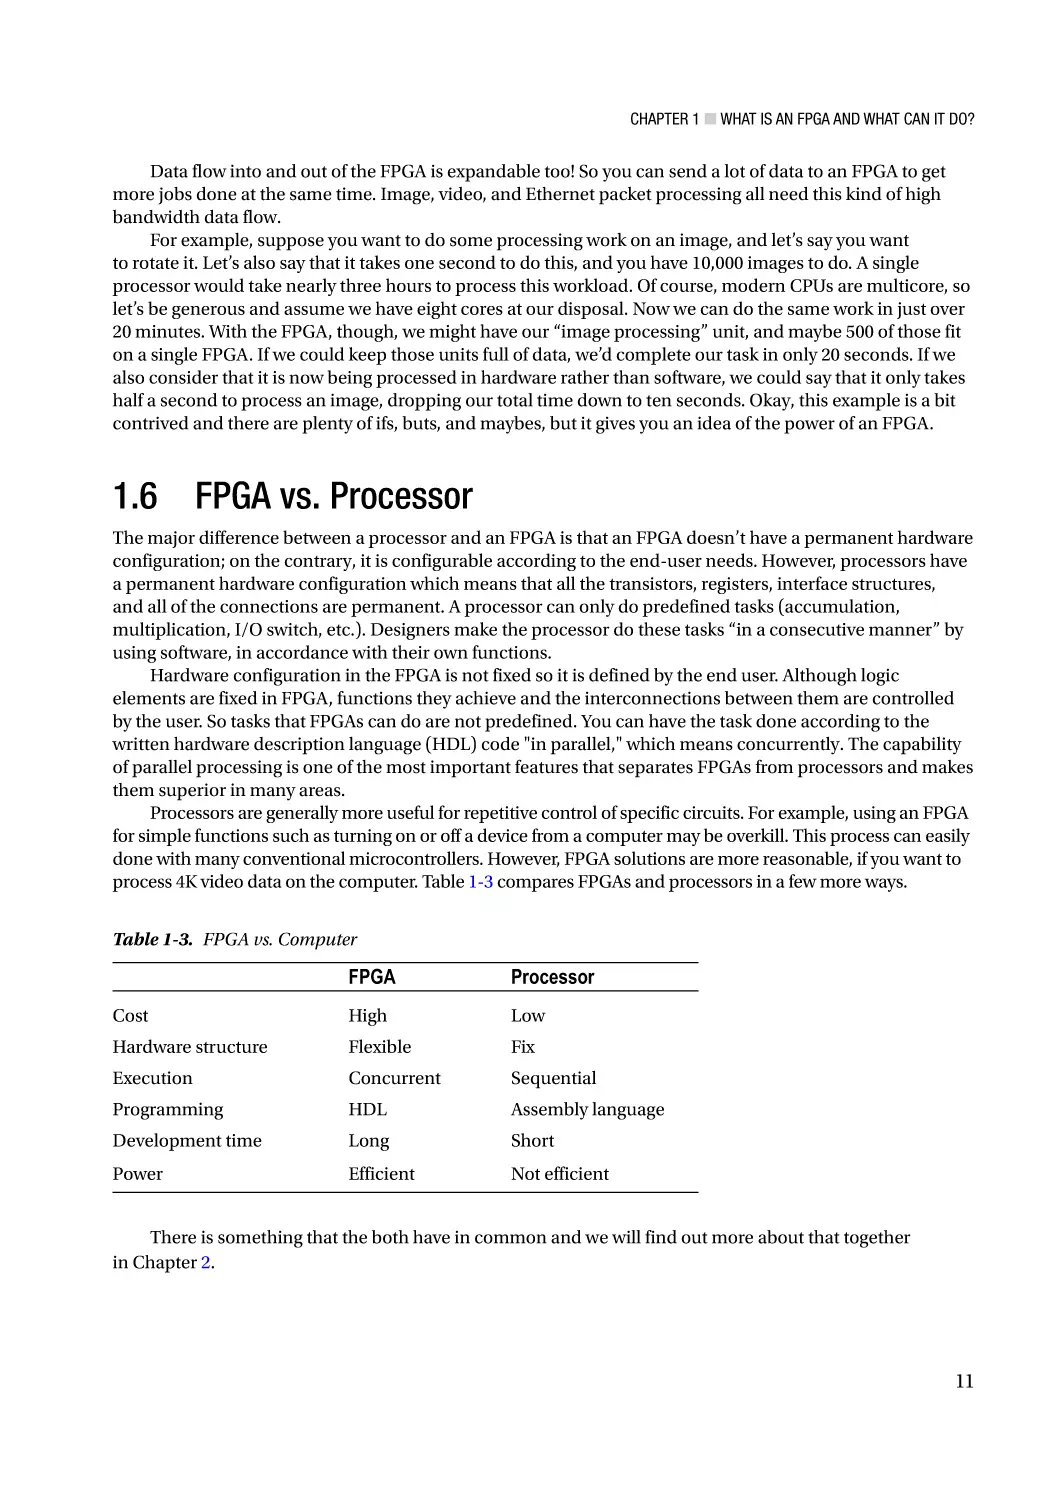 1.6 FPGA vs. Processor